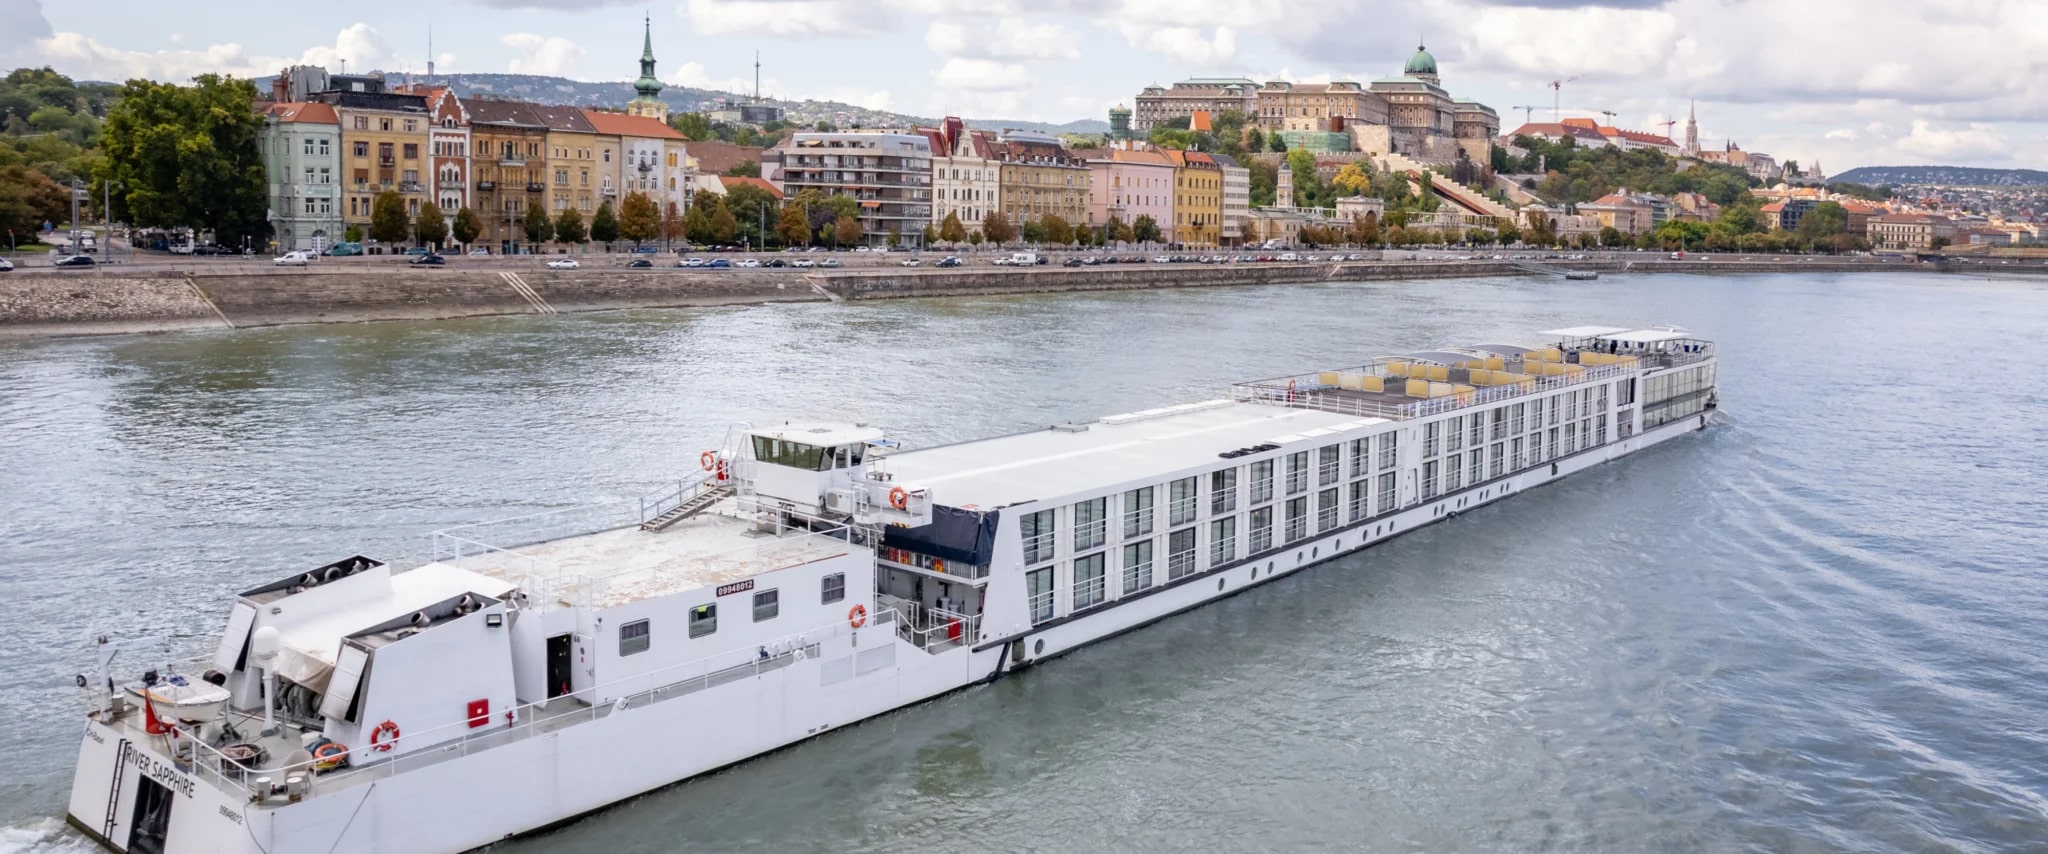 MS RIVER SAPPHIRE CRUCEROS DANUBIO CRUCEROS FLUVIALES TUI RIVER CRUISES DANUBE CRUISES CRUCEROS DANUBIO CAPITALES DEL DANUBIO CRUCEROS #Danubio #Danube #CrucerosFluviales #CrucerosTui #TuiCruises #MSRiverSapphire #RiverSapphire #Wien #Viena #Budapest #Bratislava #Passau